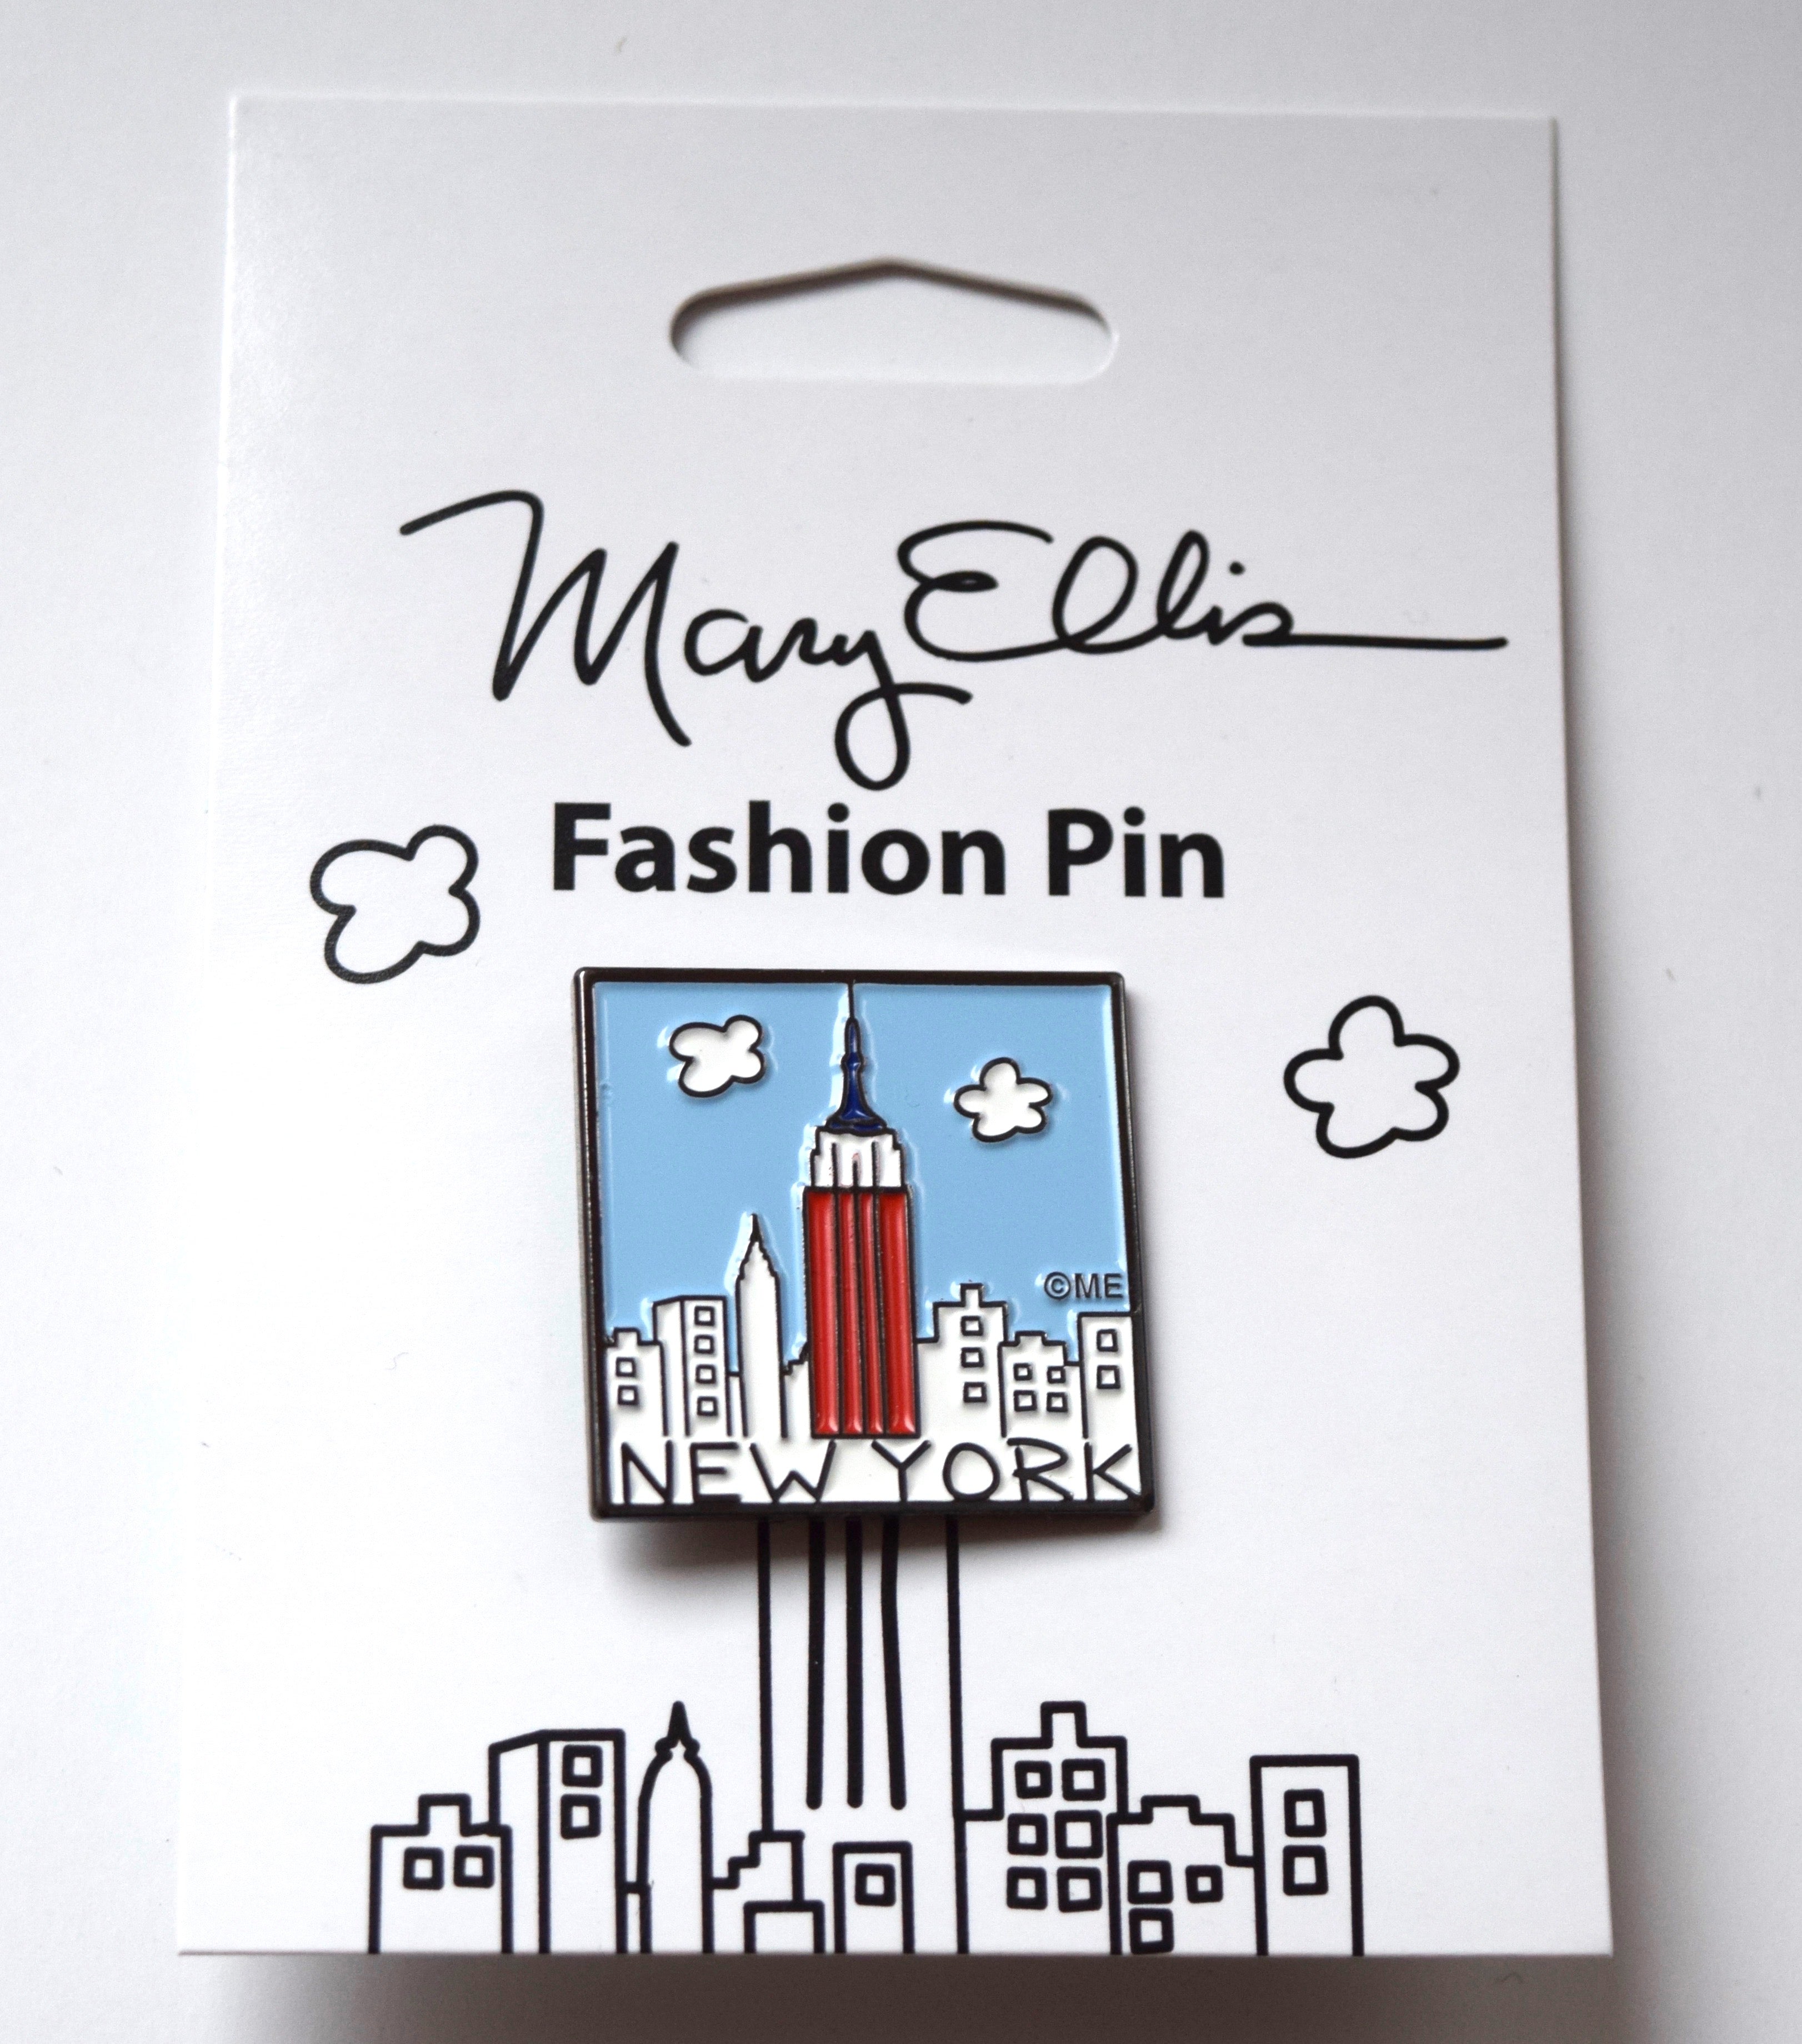 Pin on New York, NY